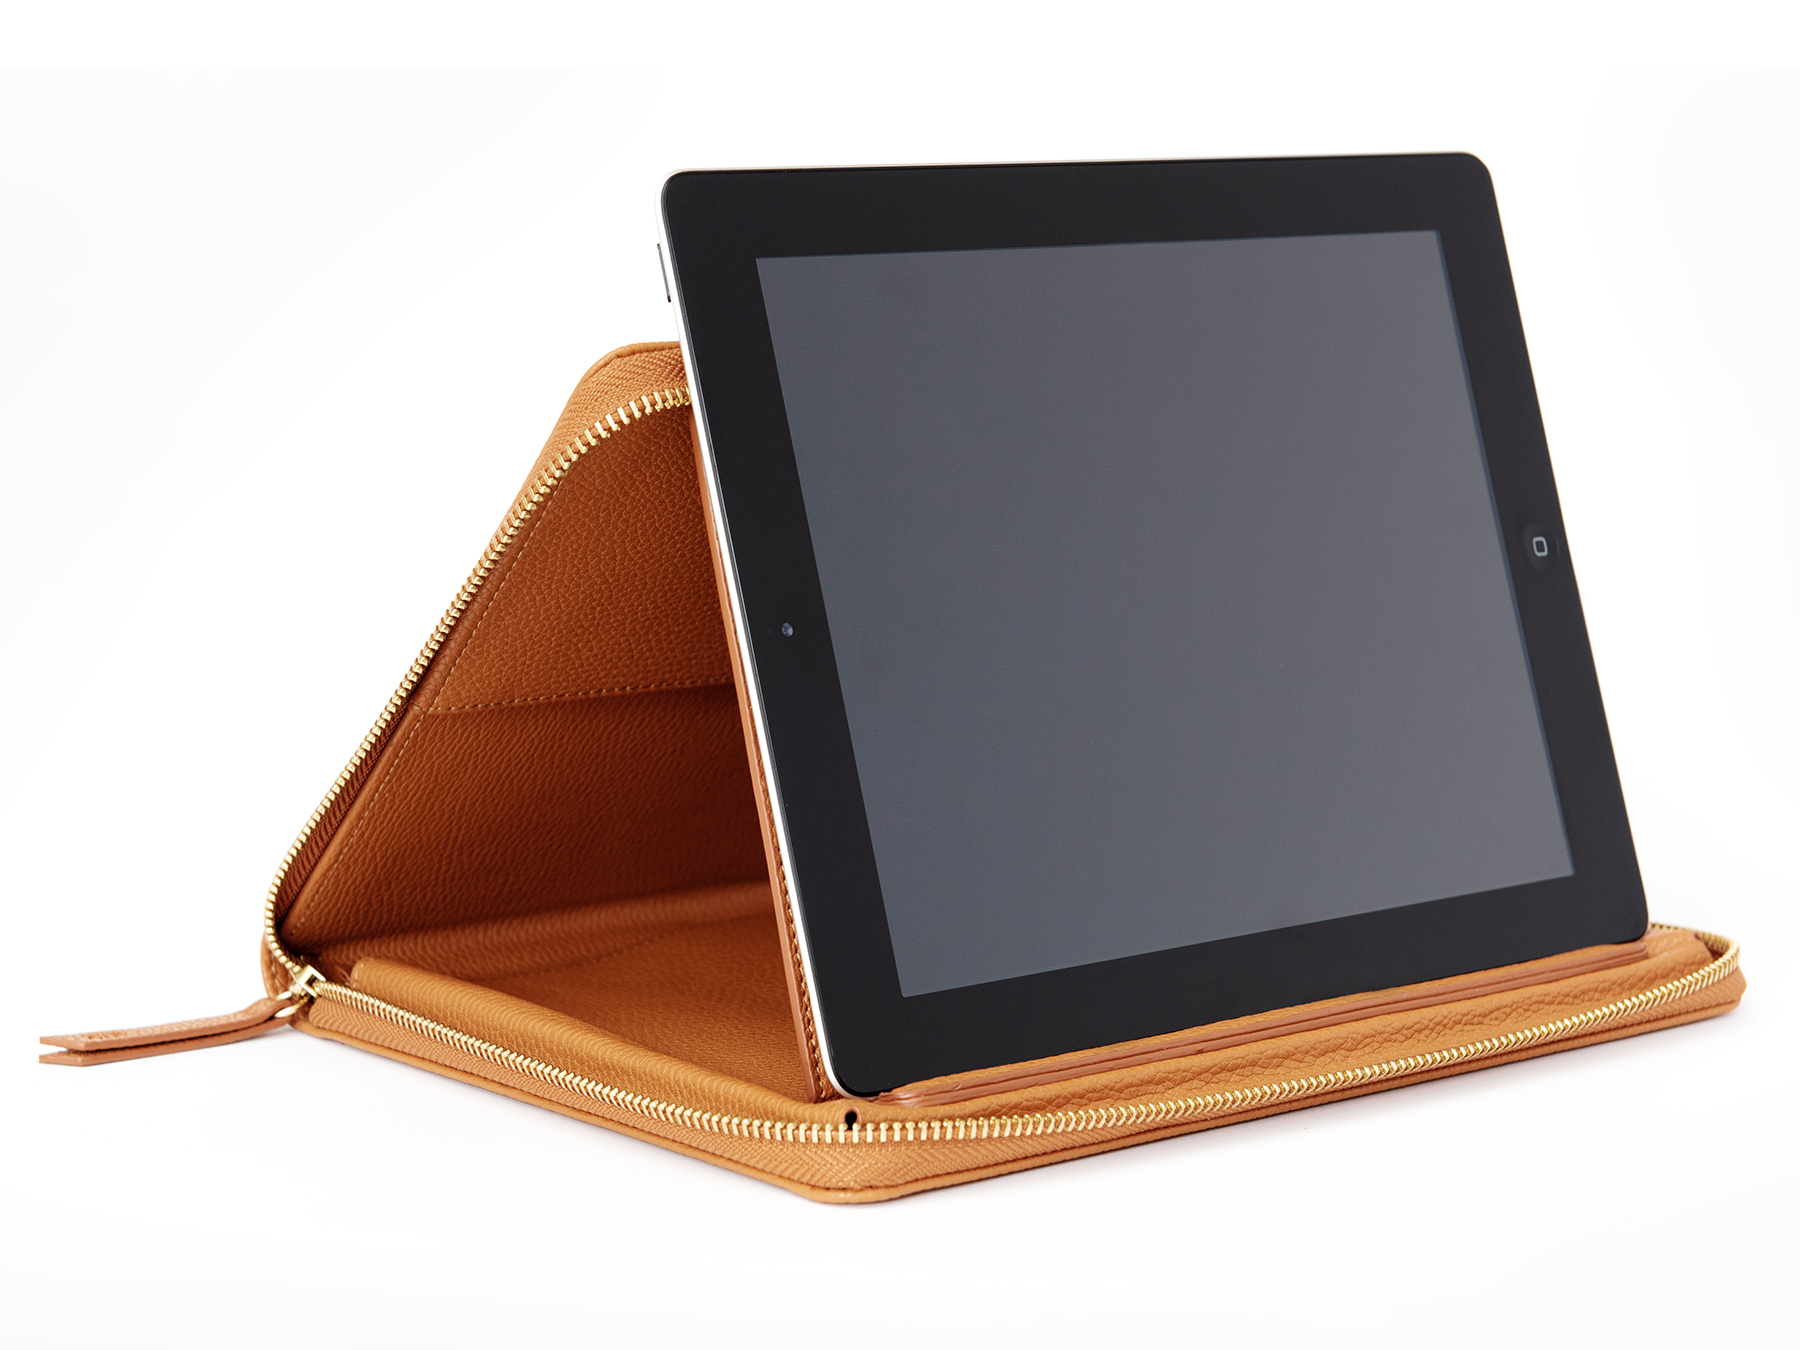 MOTILE Tablet Envelope Case, Camel - image 4 of 8